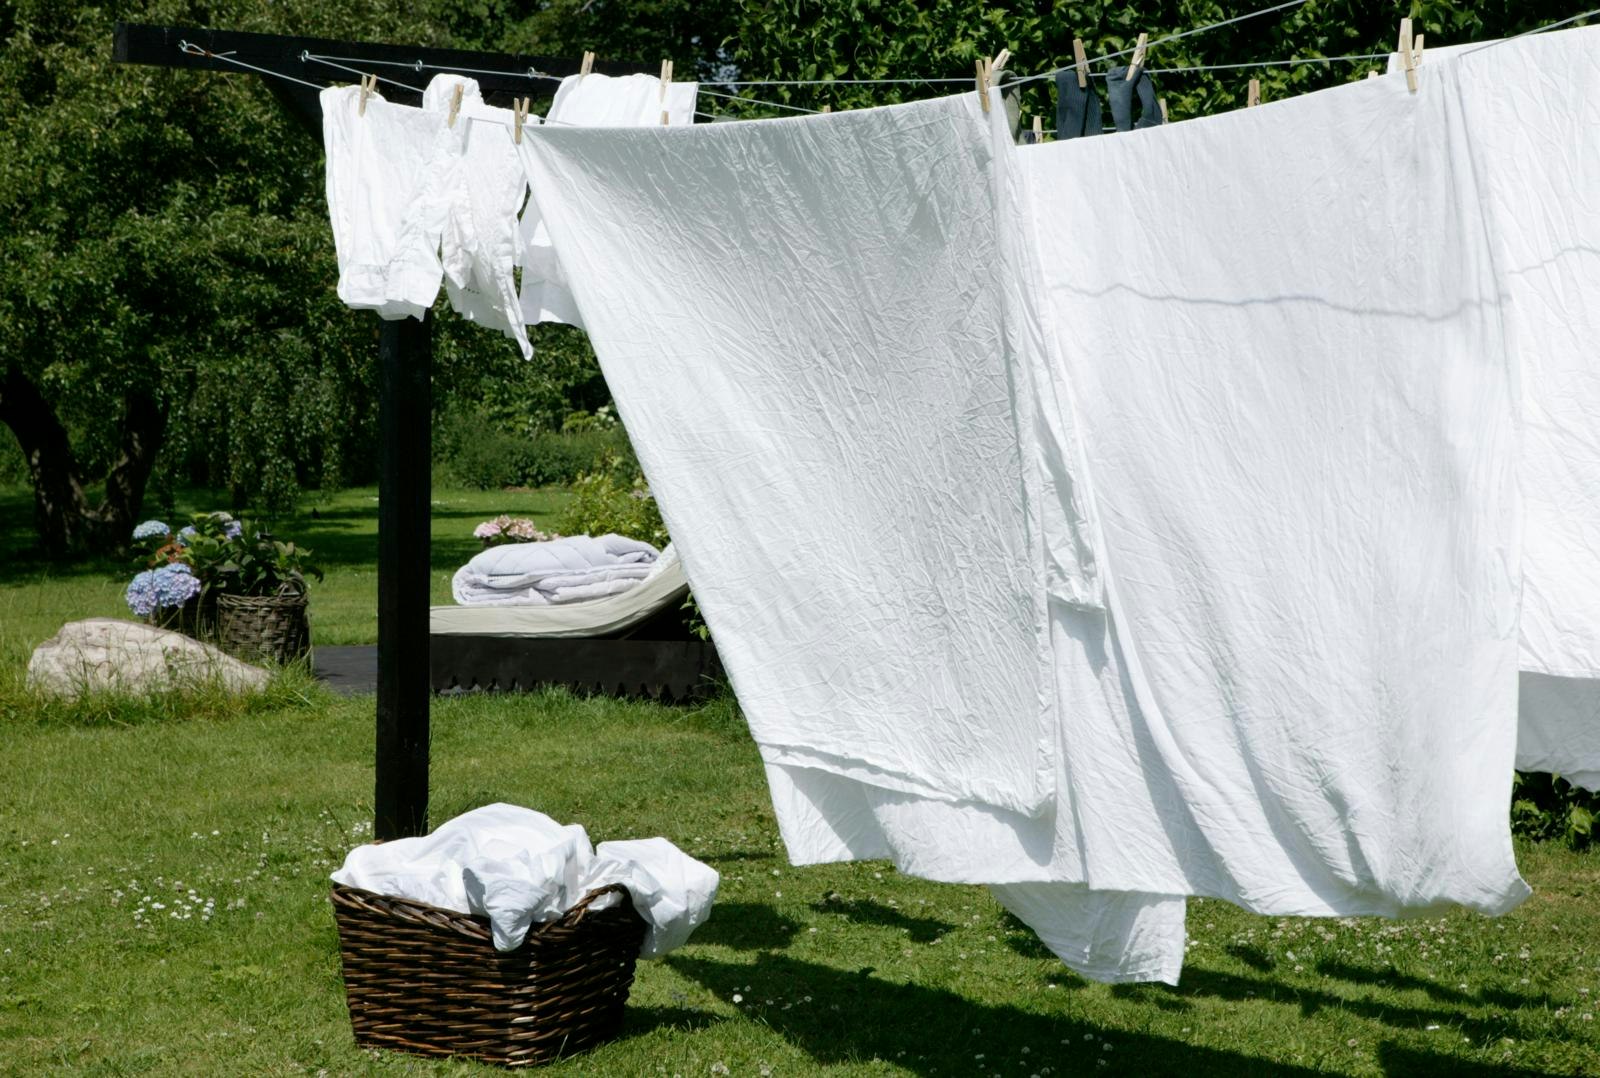 Vasketøj tørres udenfor på tørresnor